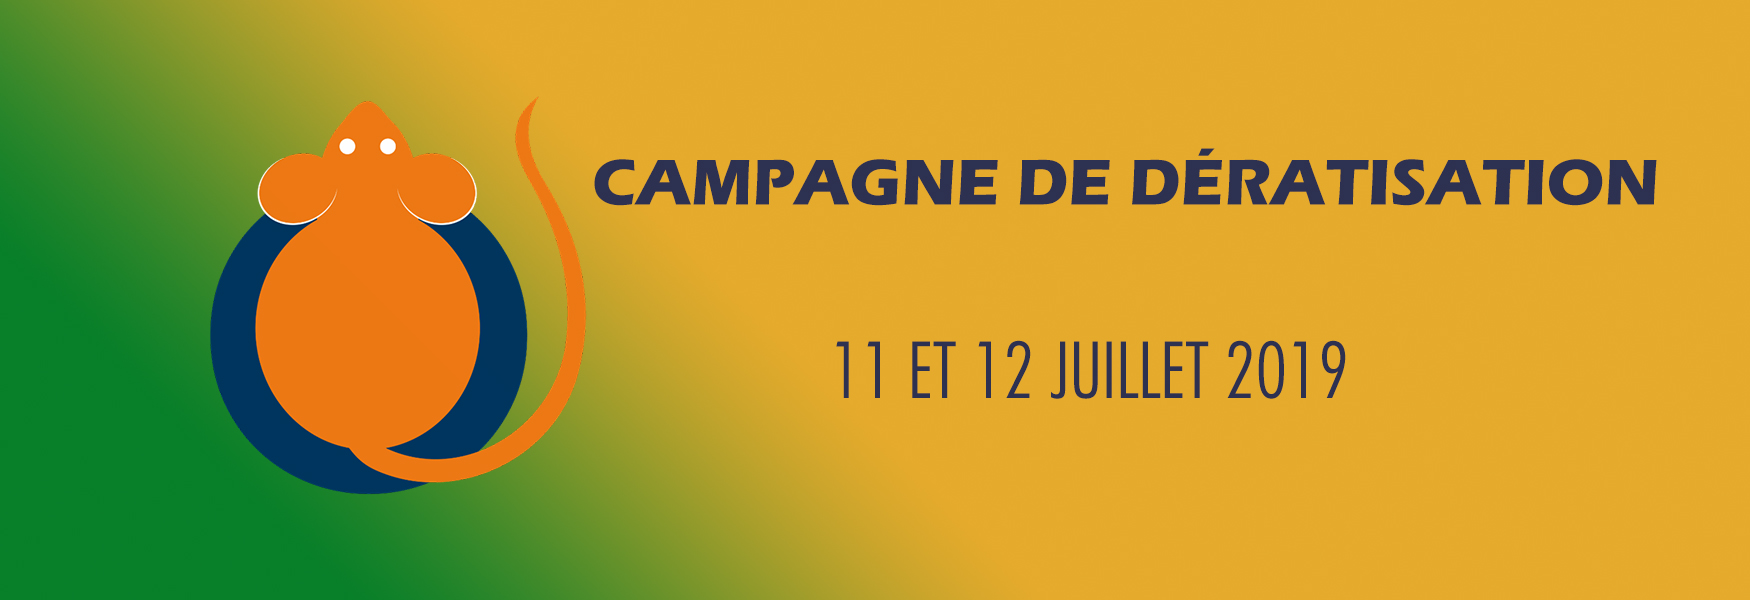 Campagne de dératisation les 11 et 12 juillet 2019